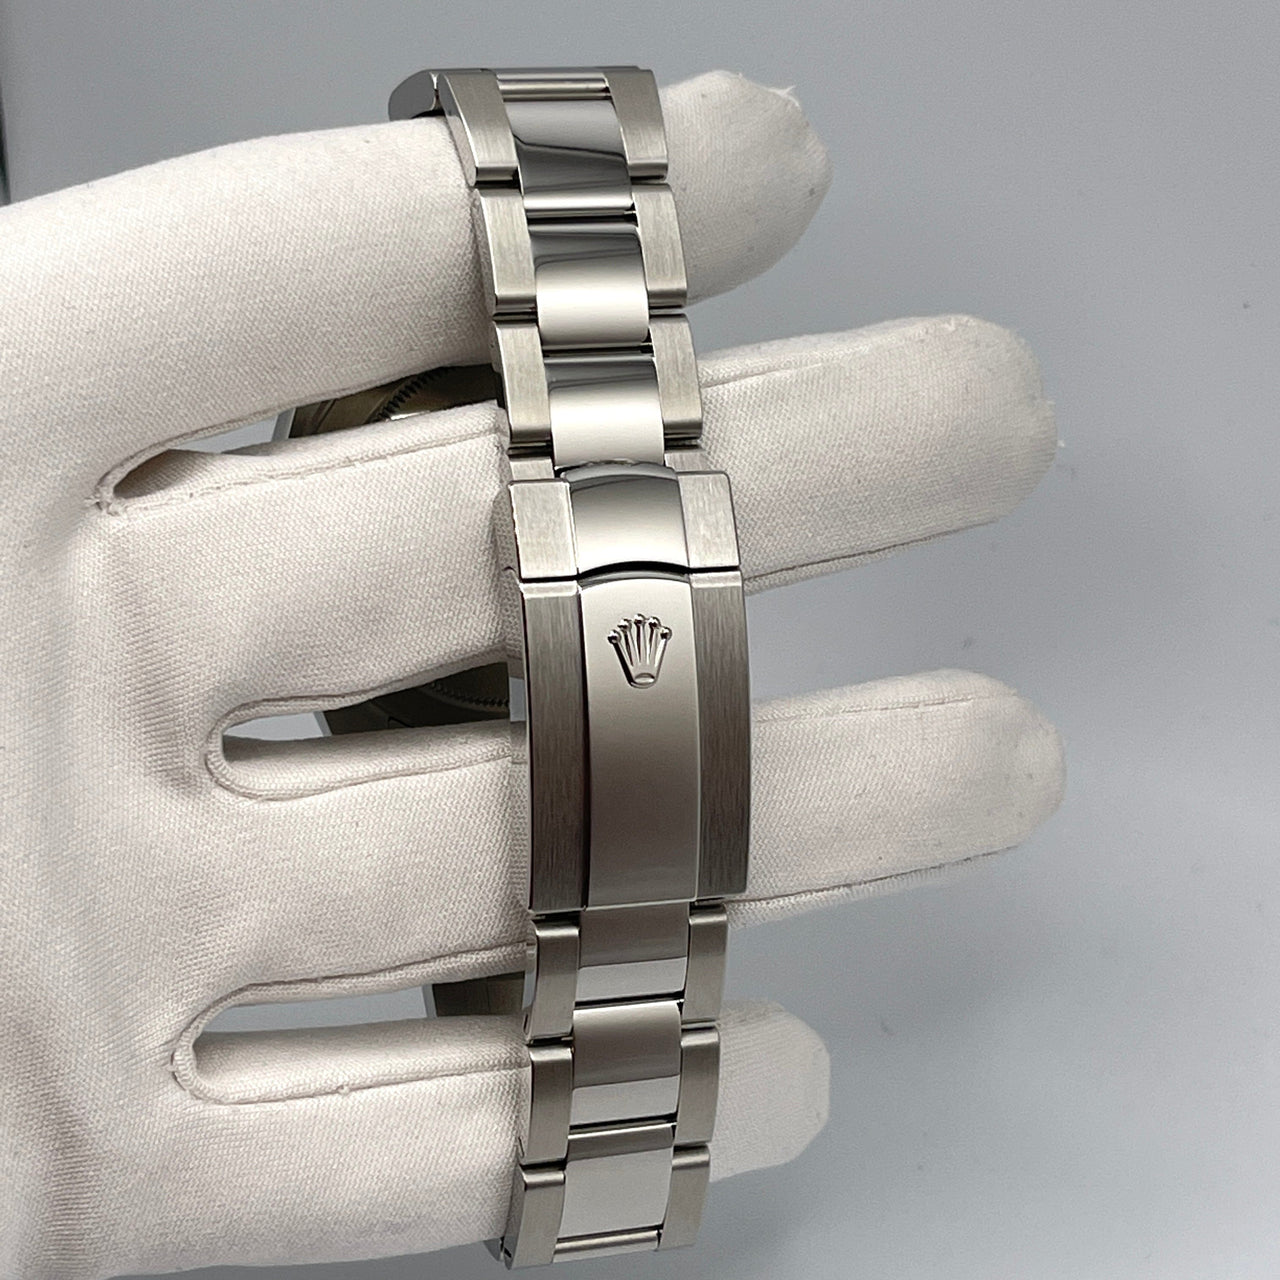 Luxury Watch Rolex Datejust 41 White Gold & Stainless Steel Blue Dial 126334 Wrist Aficionado